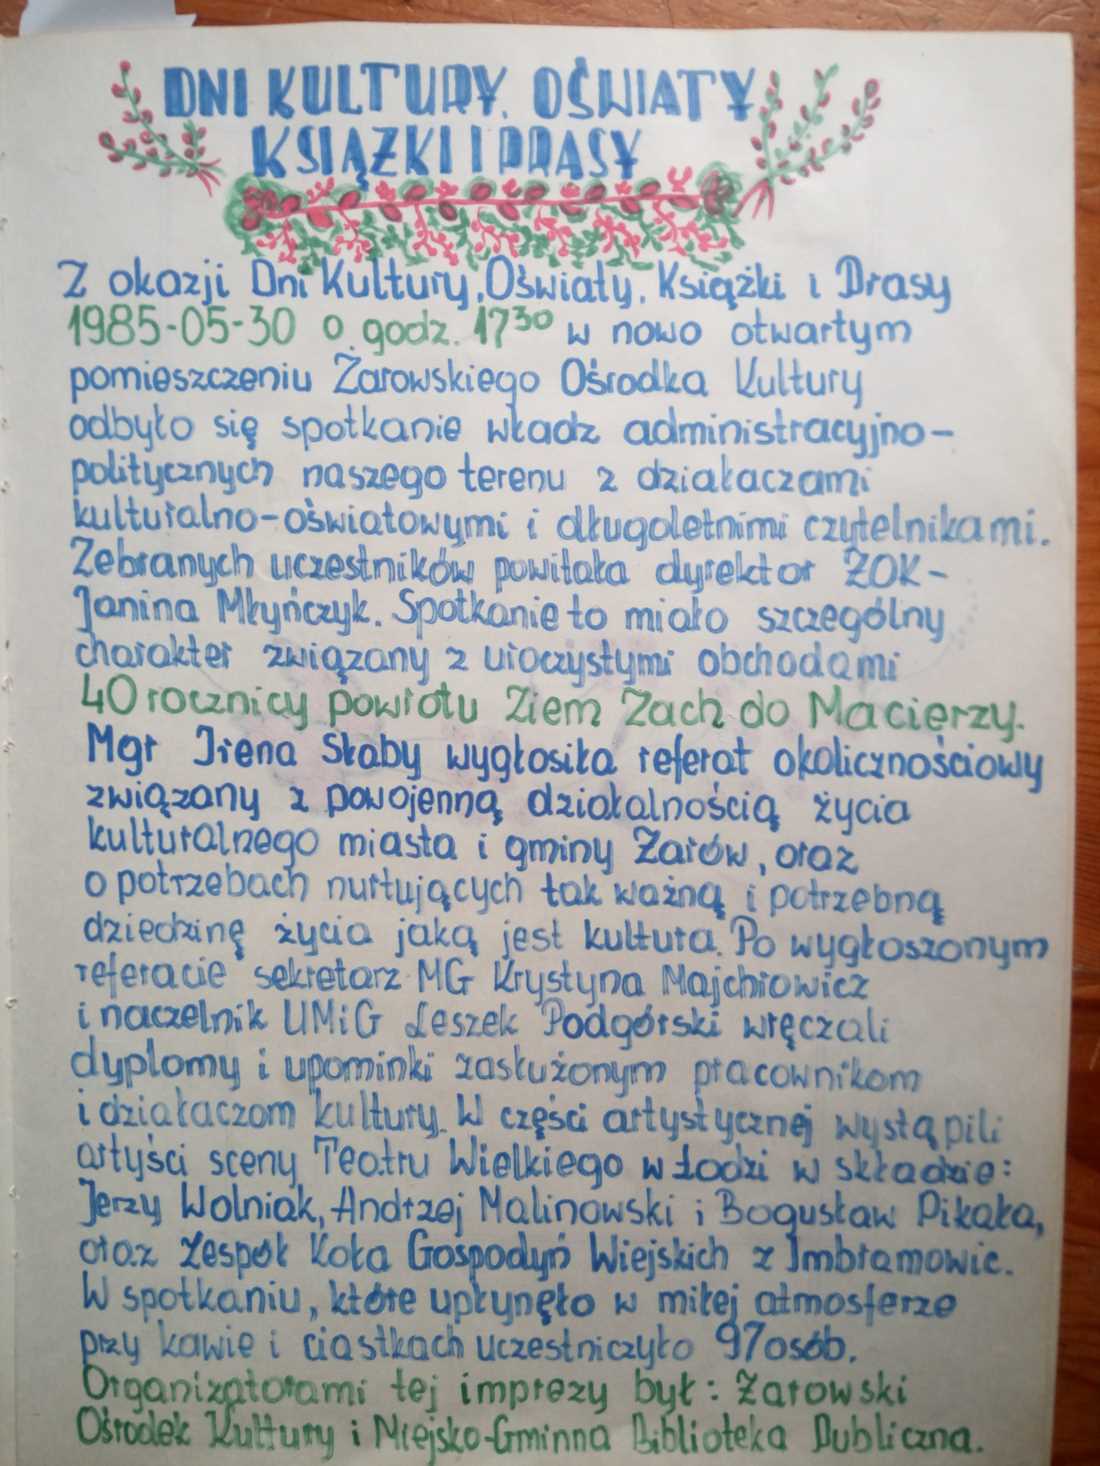 kronika biblioteka zarow cz2 (2)